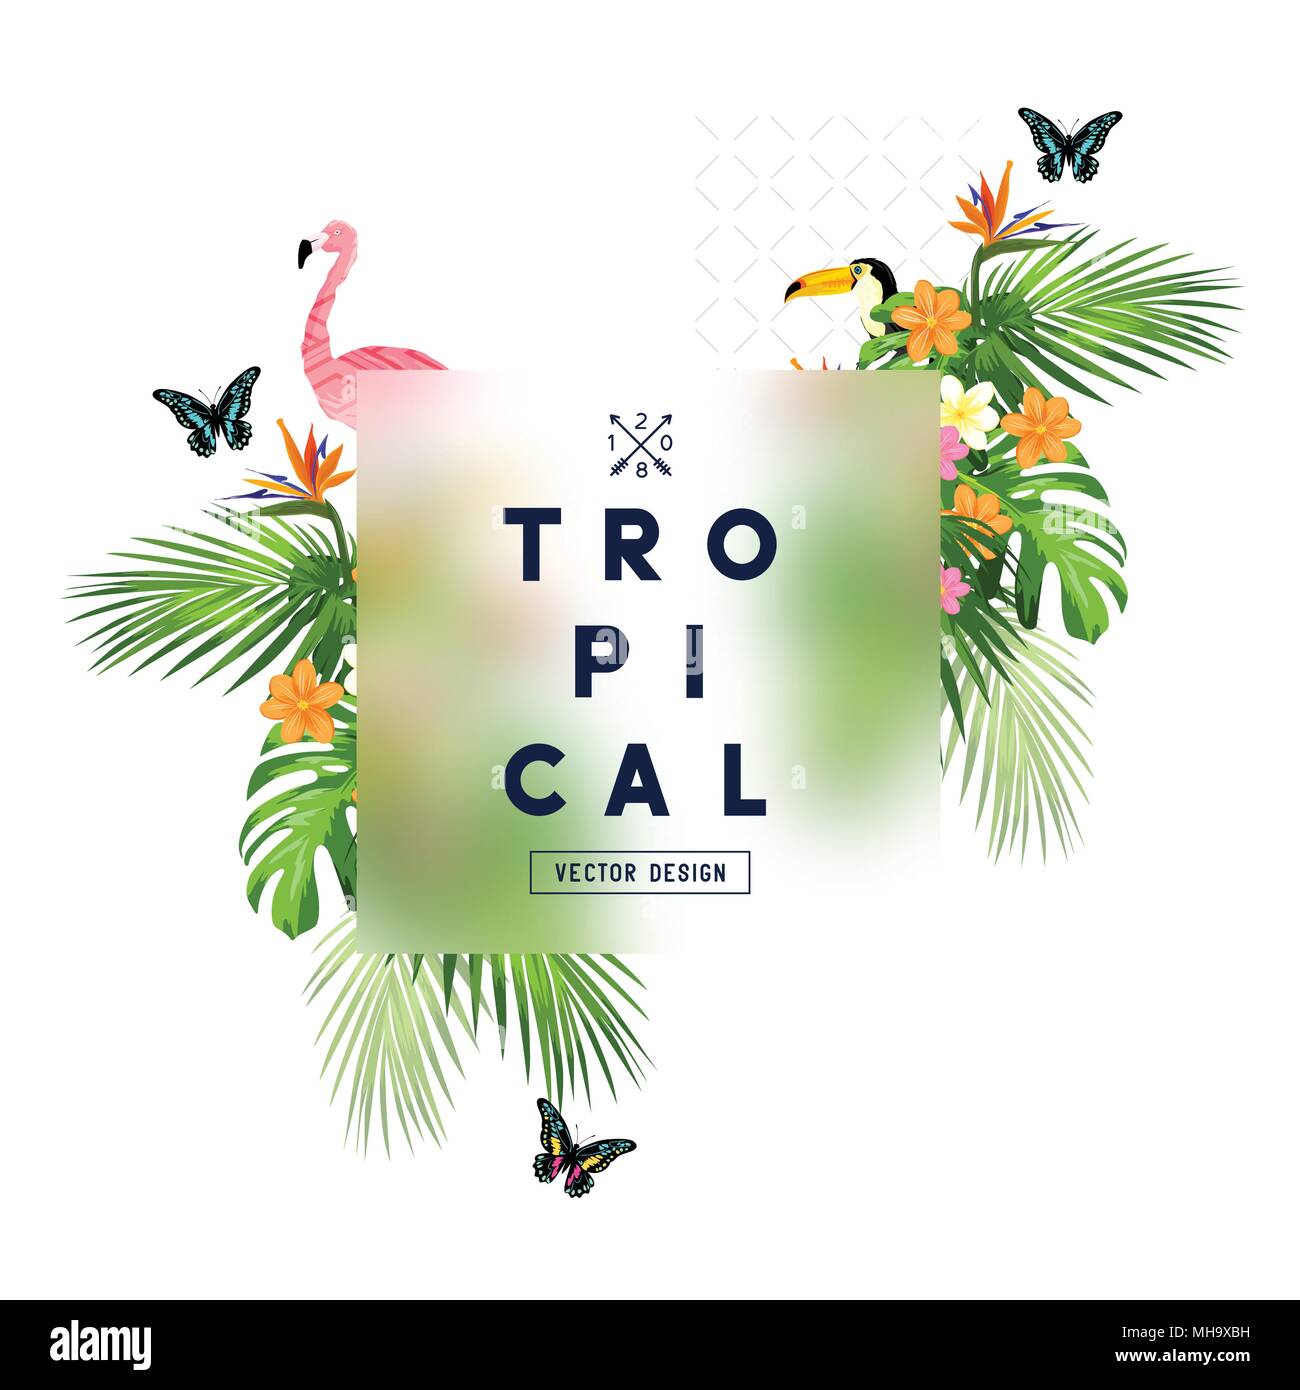 Tropischer Regenwald Rahmen mit Palmenblättern, florale Elemente, Flora und Fauna. Vector Illustration Stock Vektor